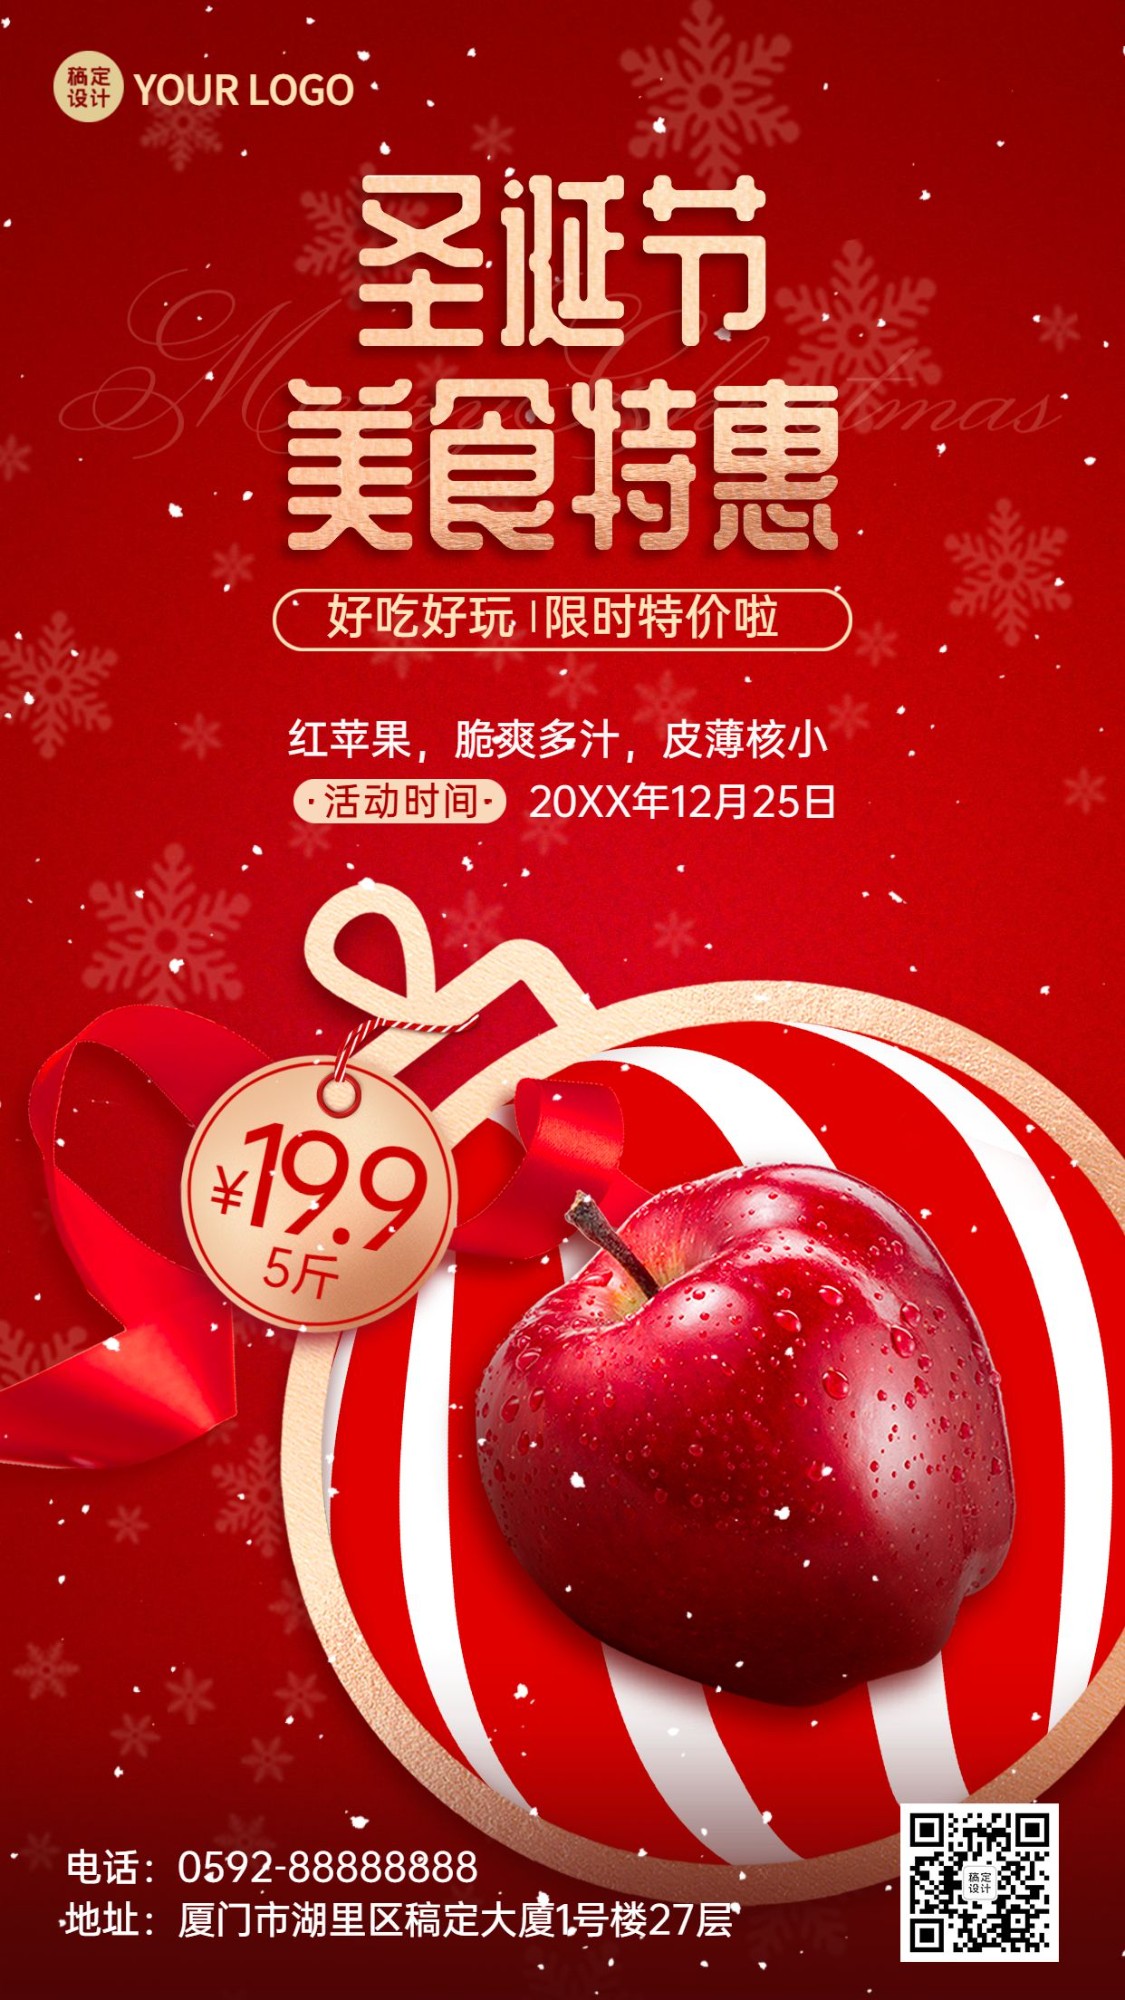 圣诞节平安夜苹果产品展示促销手机海报预览效果